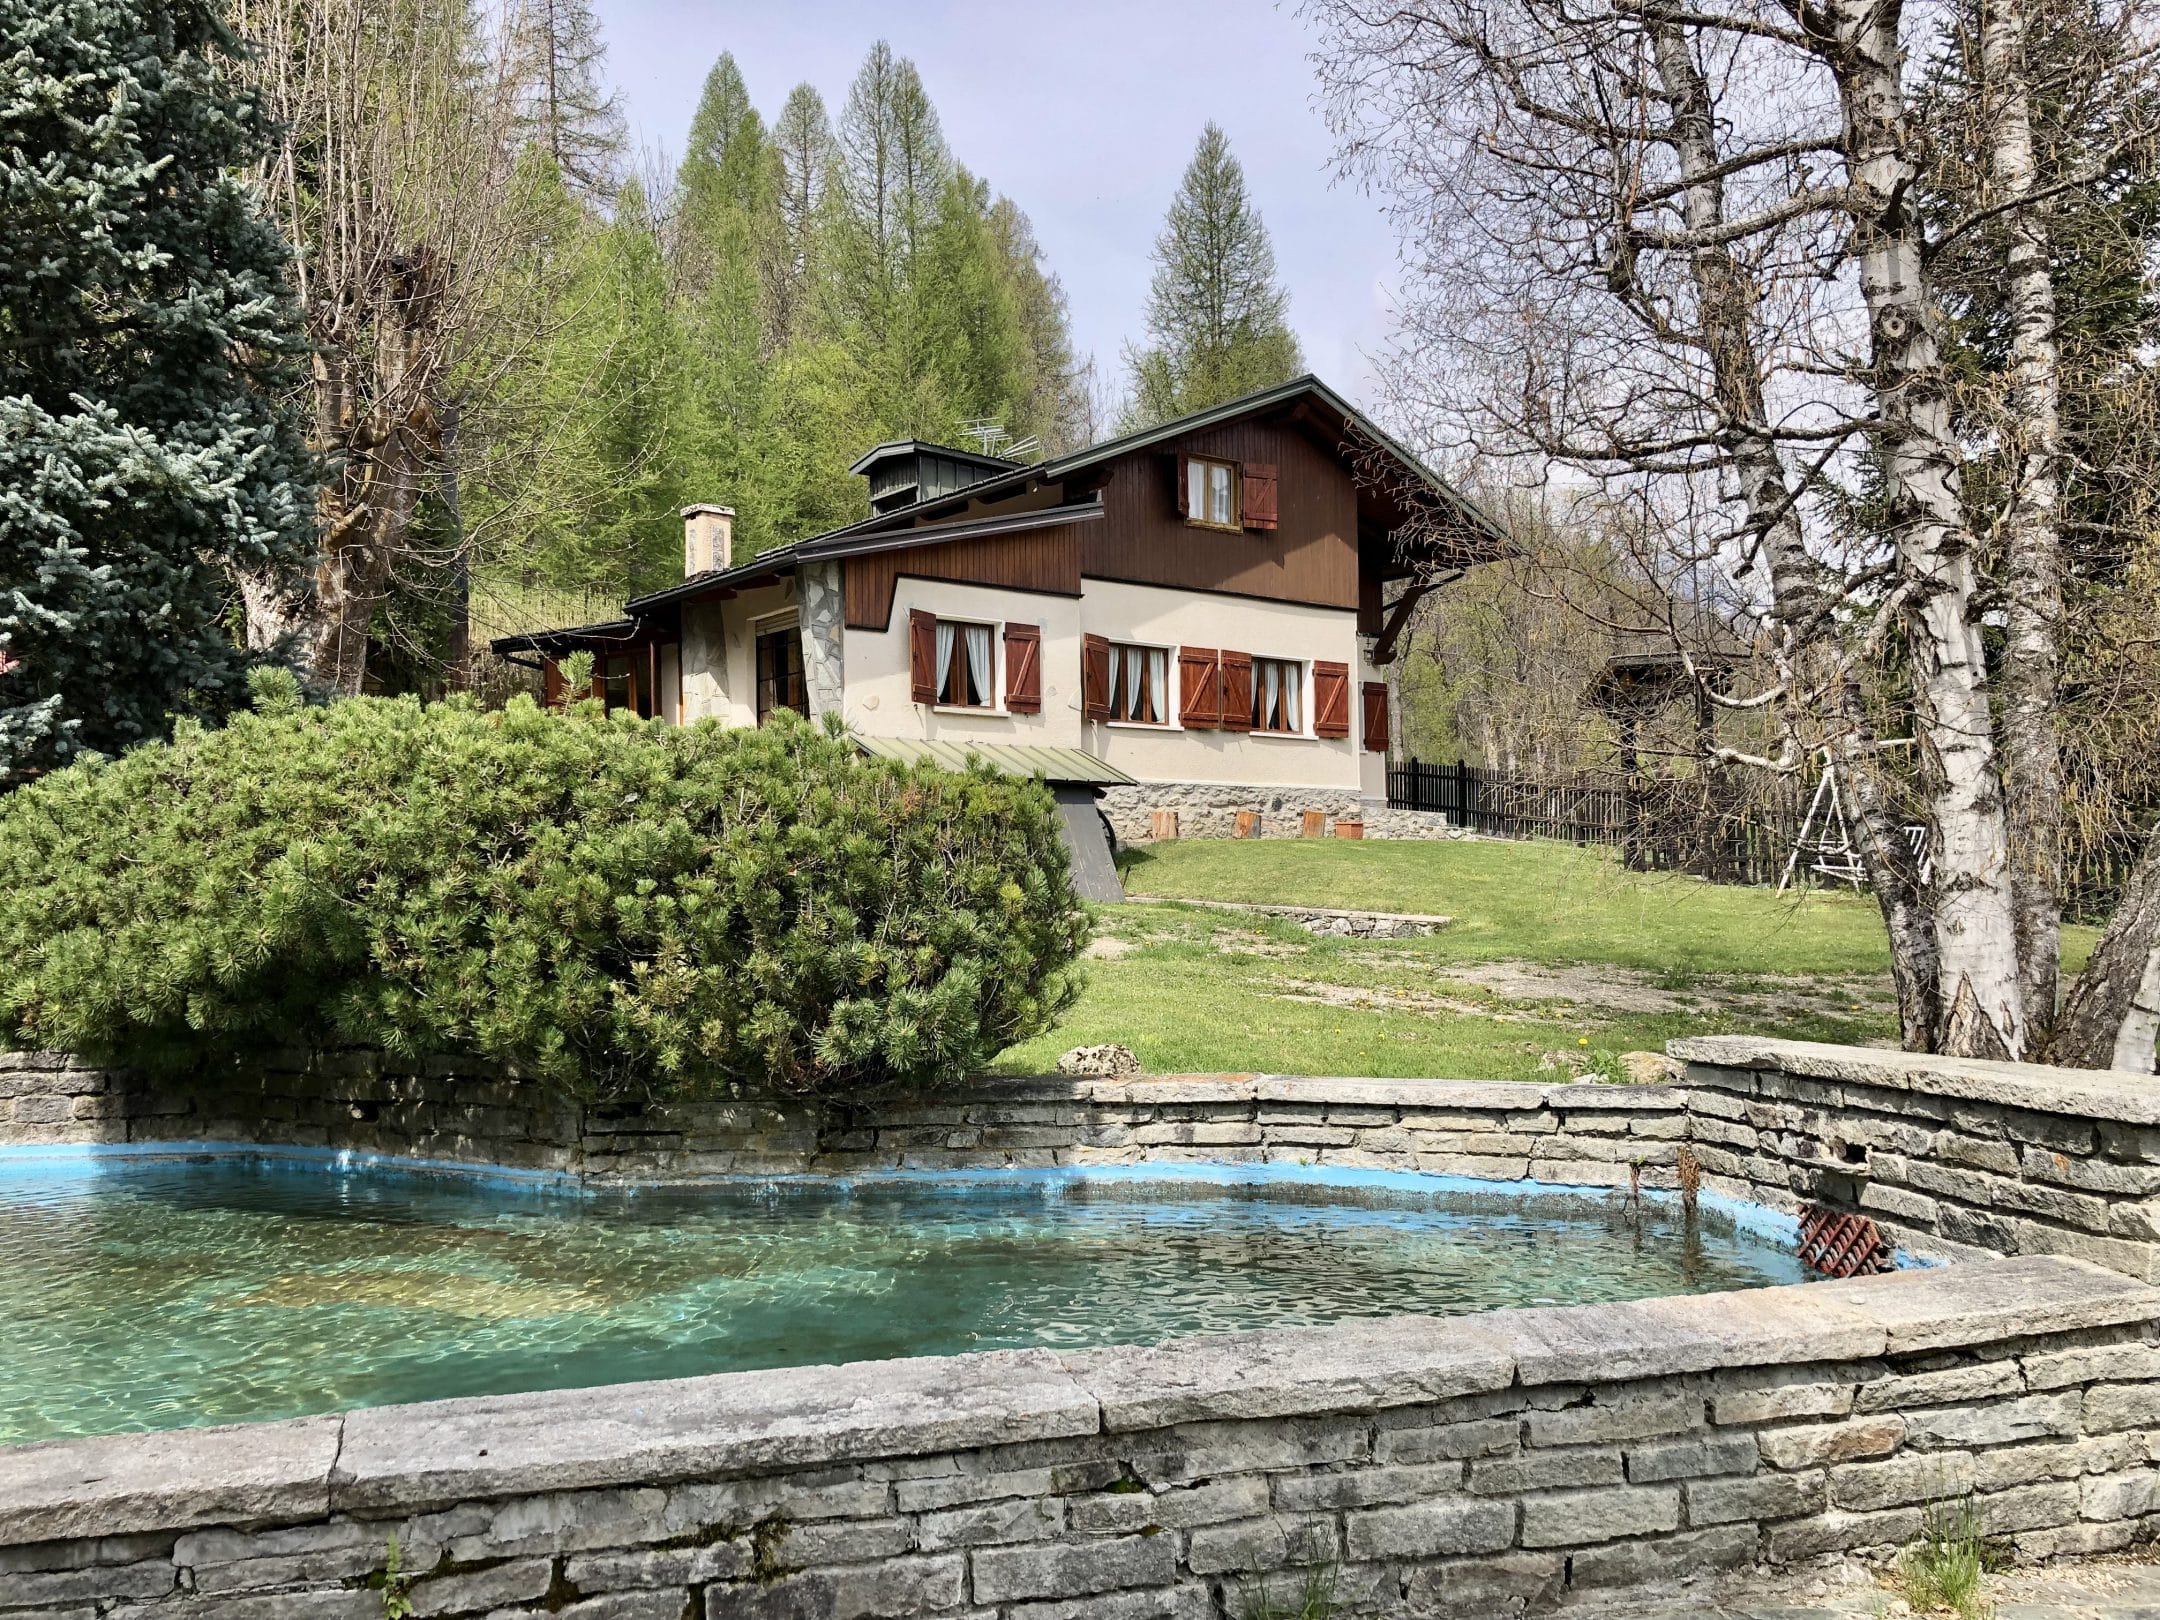 Villa indipendente con parco, in contesto alpino